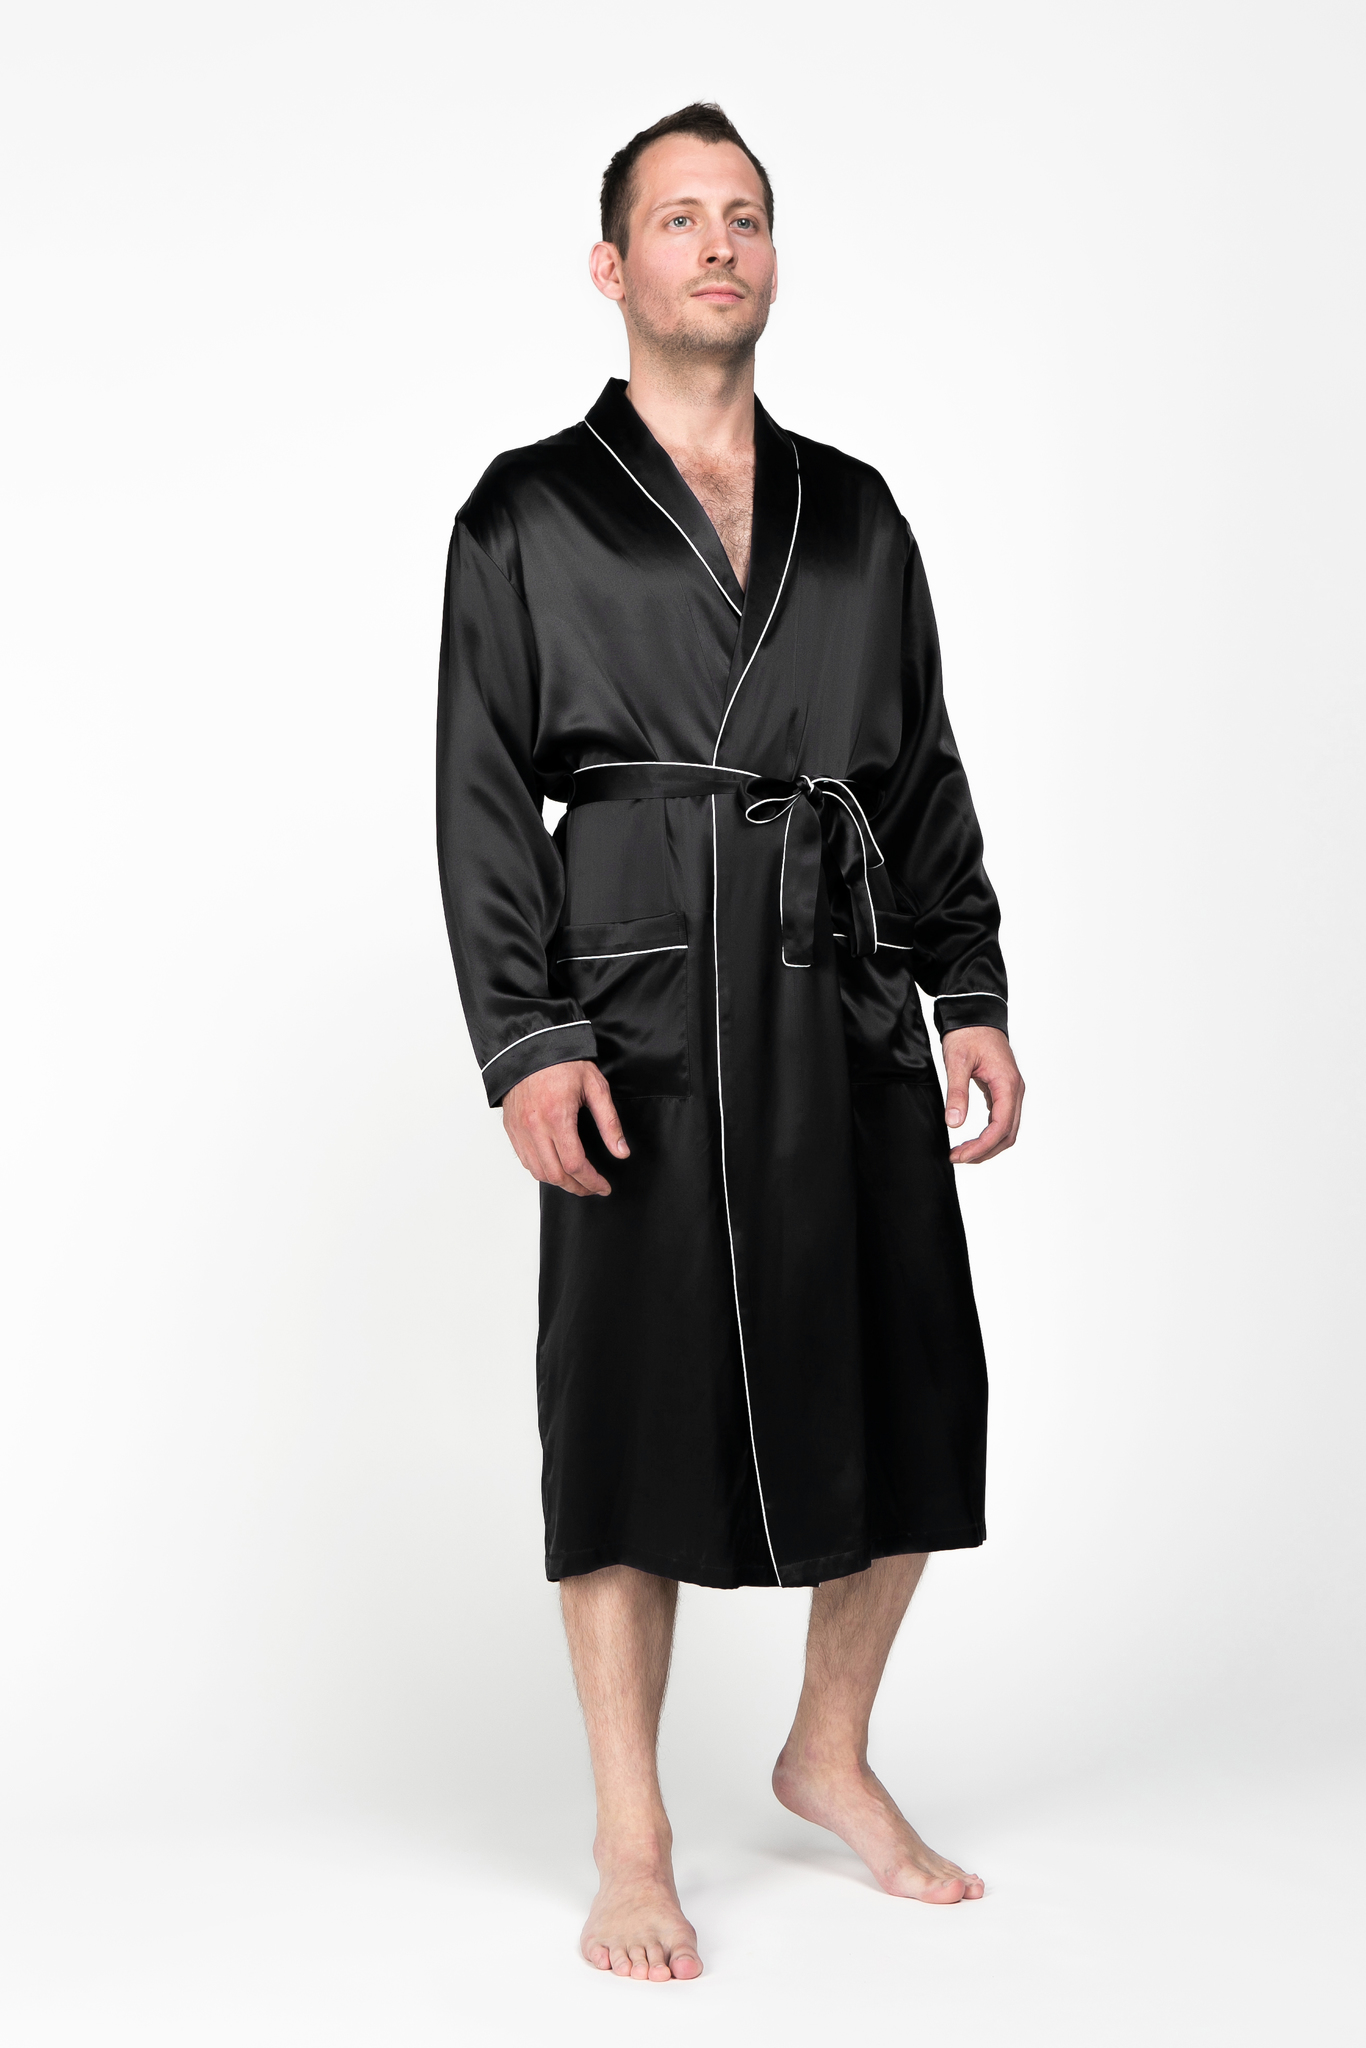 Мужской халат из натурального щелка Luxe Dream черный в Москве. Цена 30000  руб. Цвет - черный.